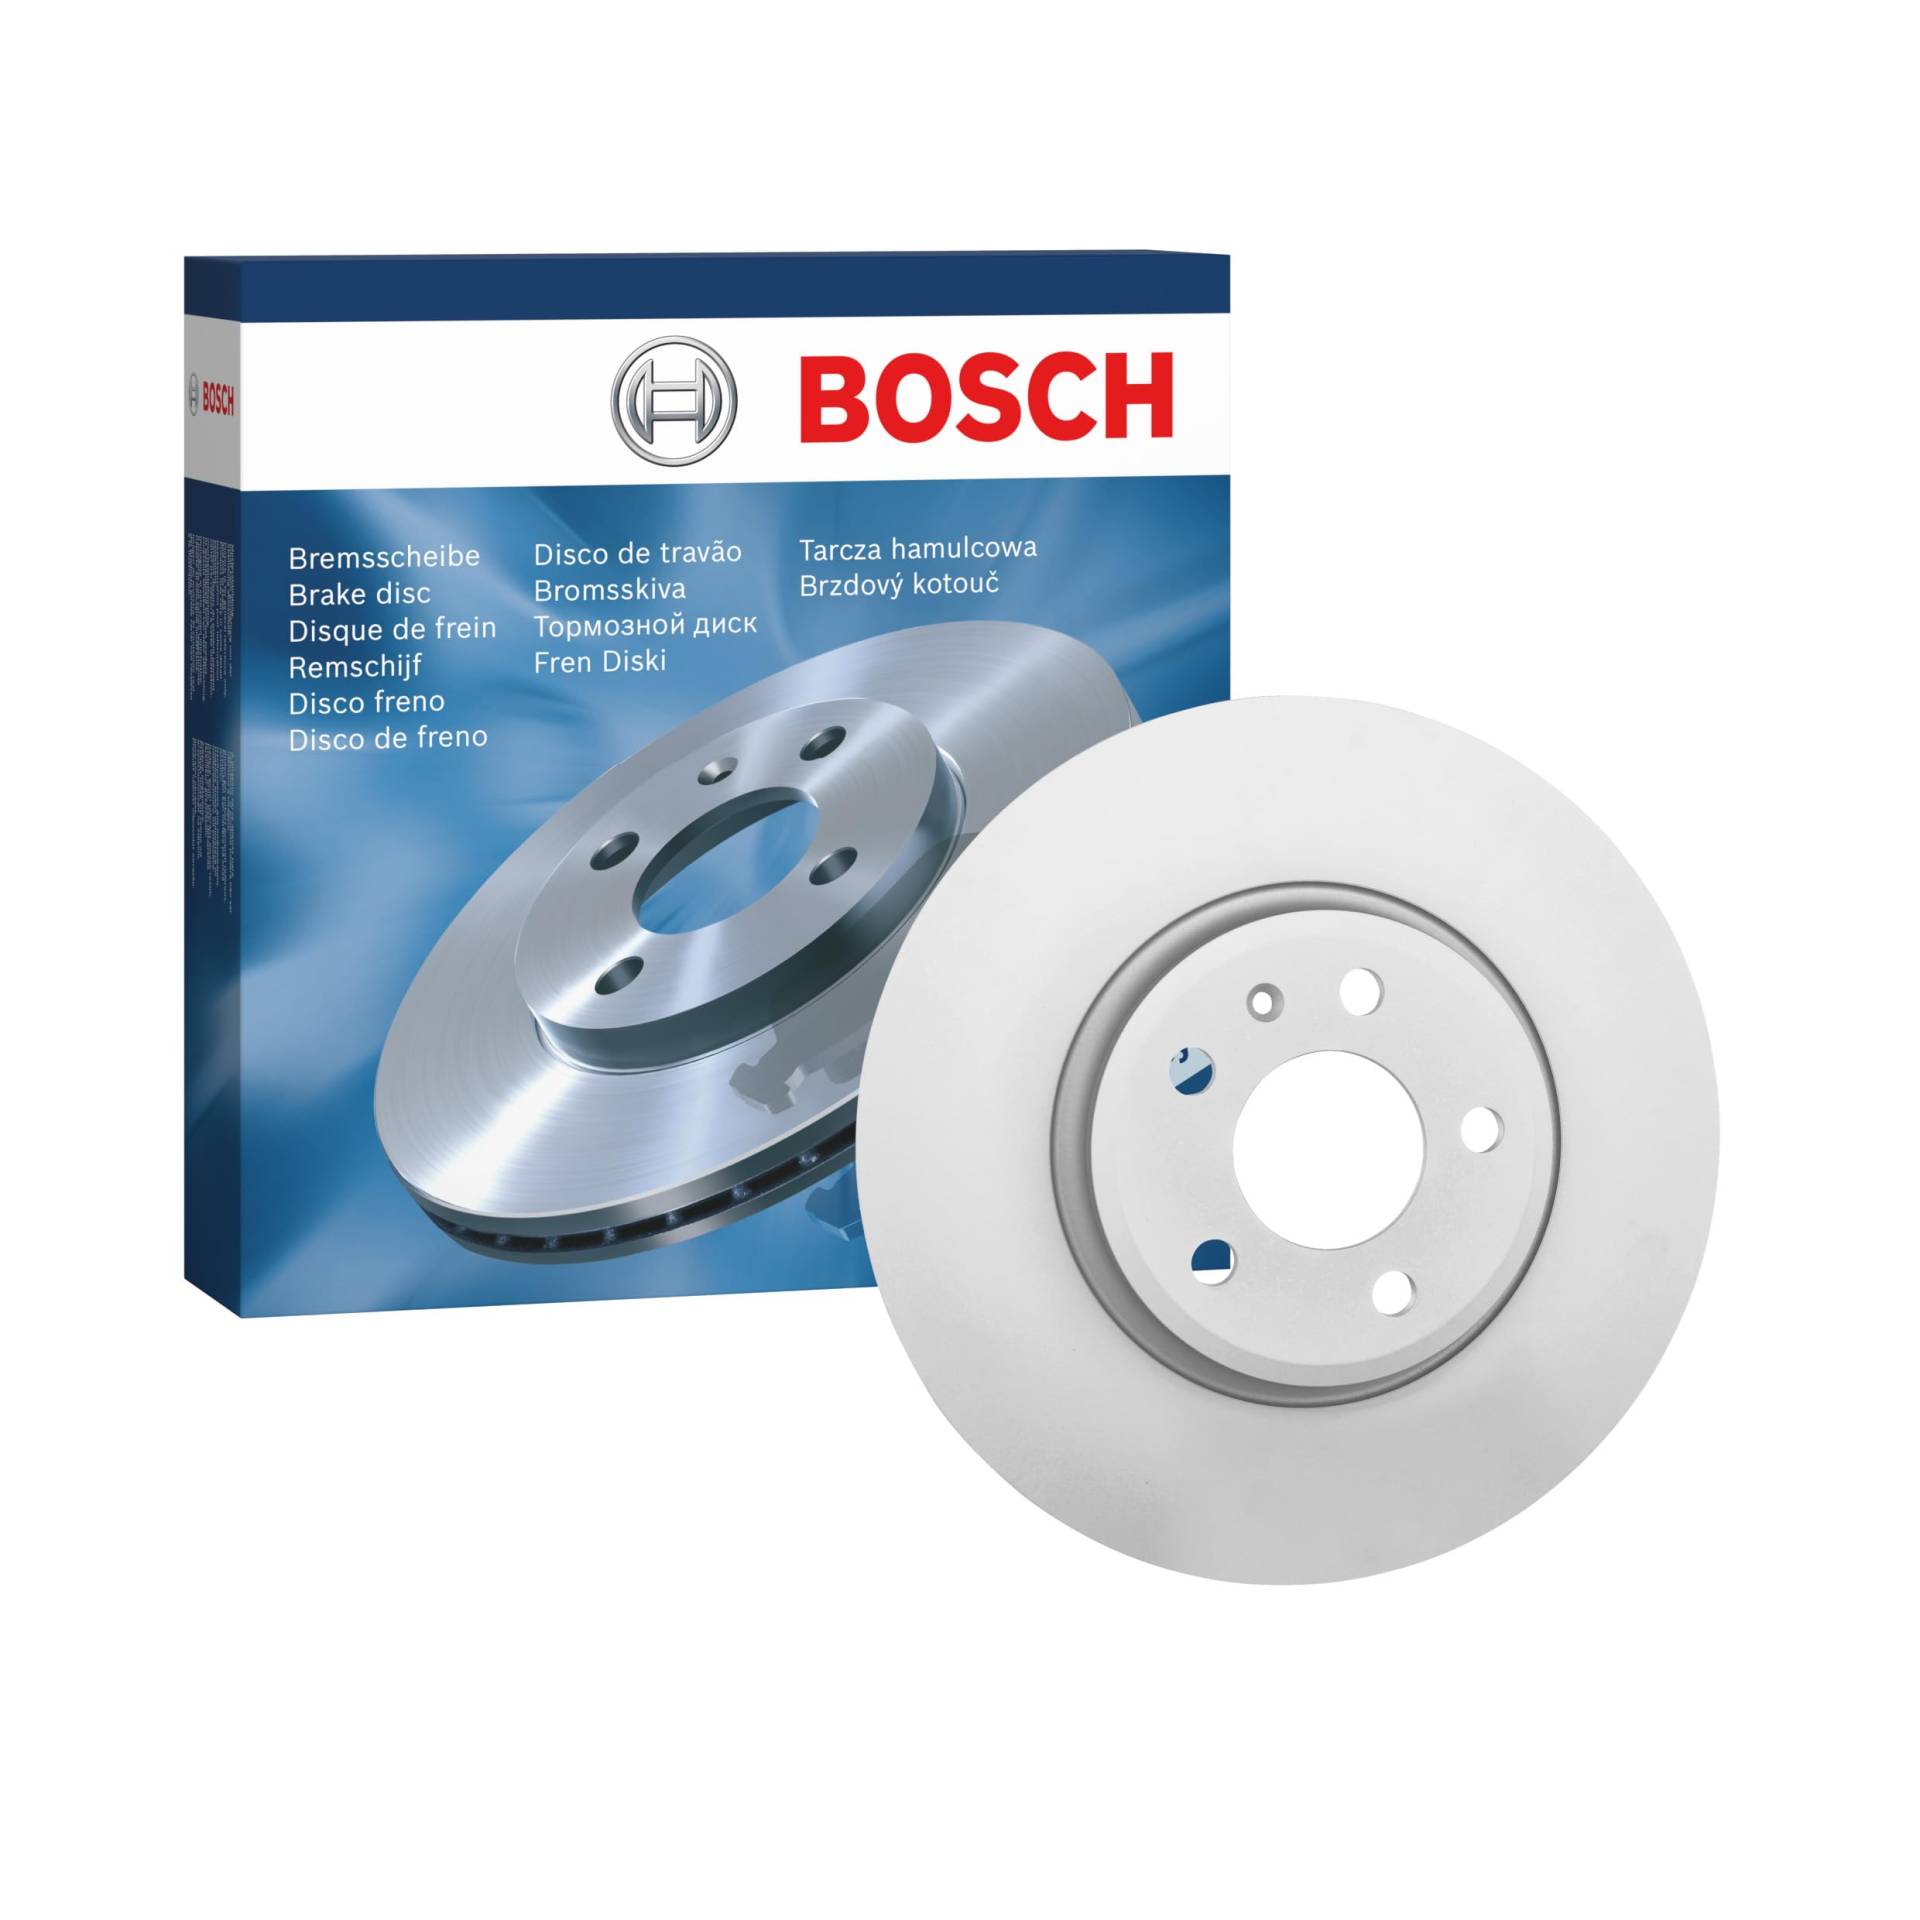 Bosch BD1327 Bremsscheiben - Vorderachse - ECE-R90 Zertifizierung - eine Bremsscheibe von Bosch Automotive